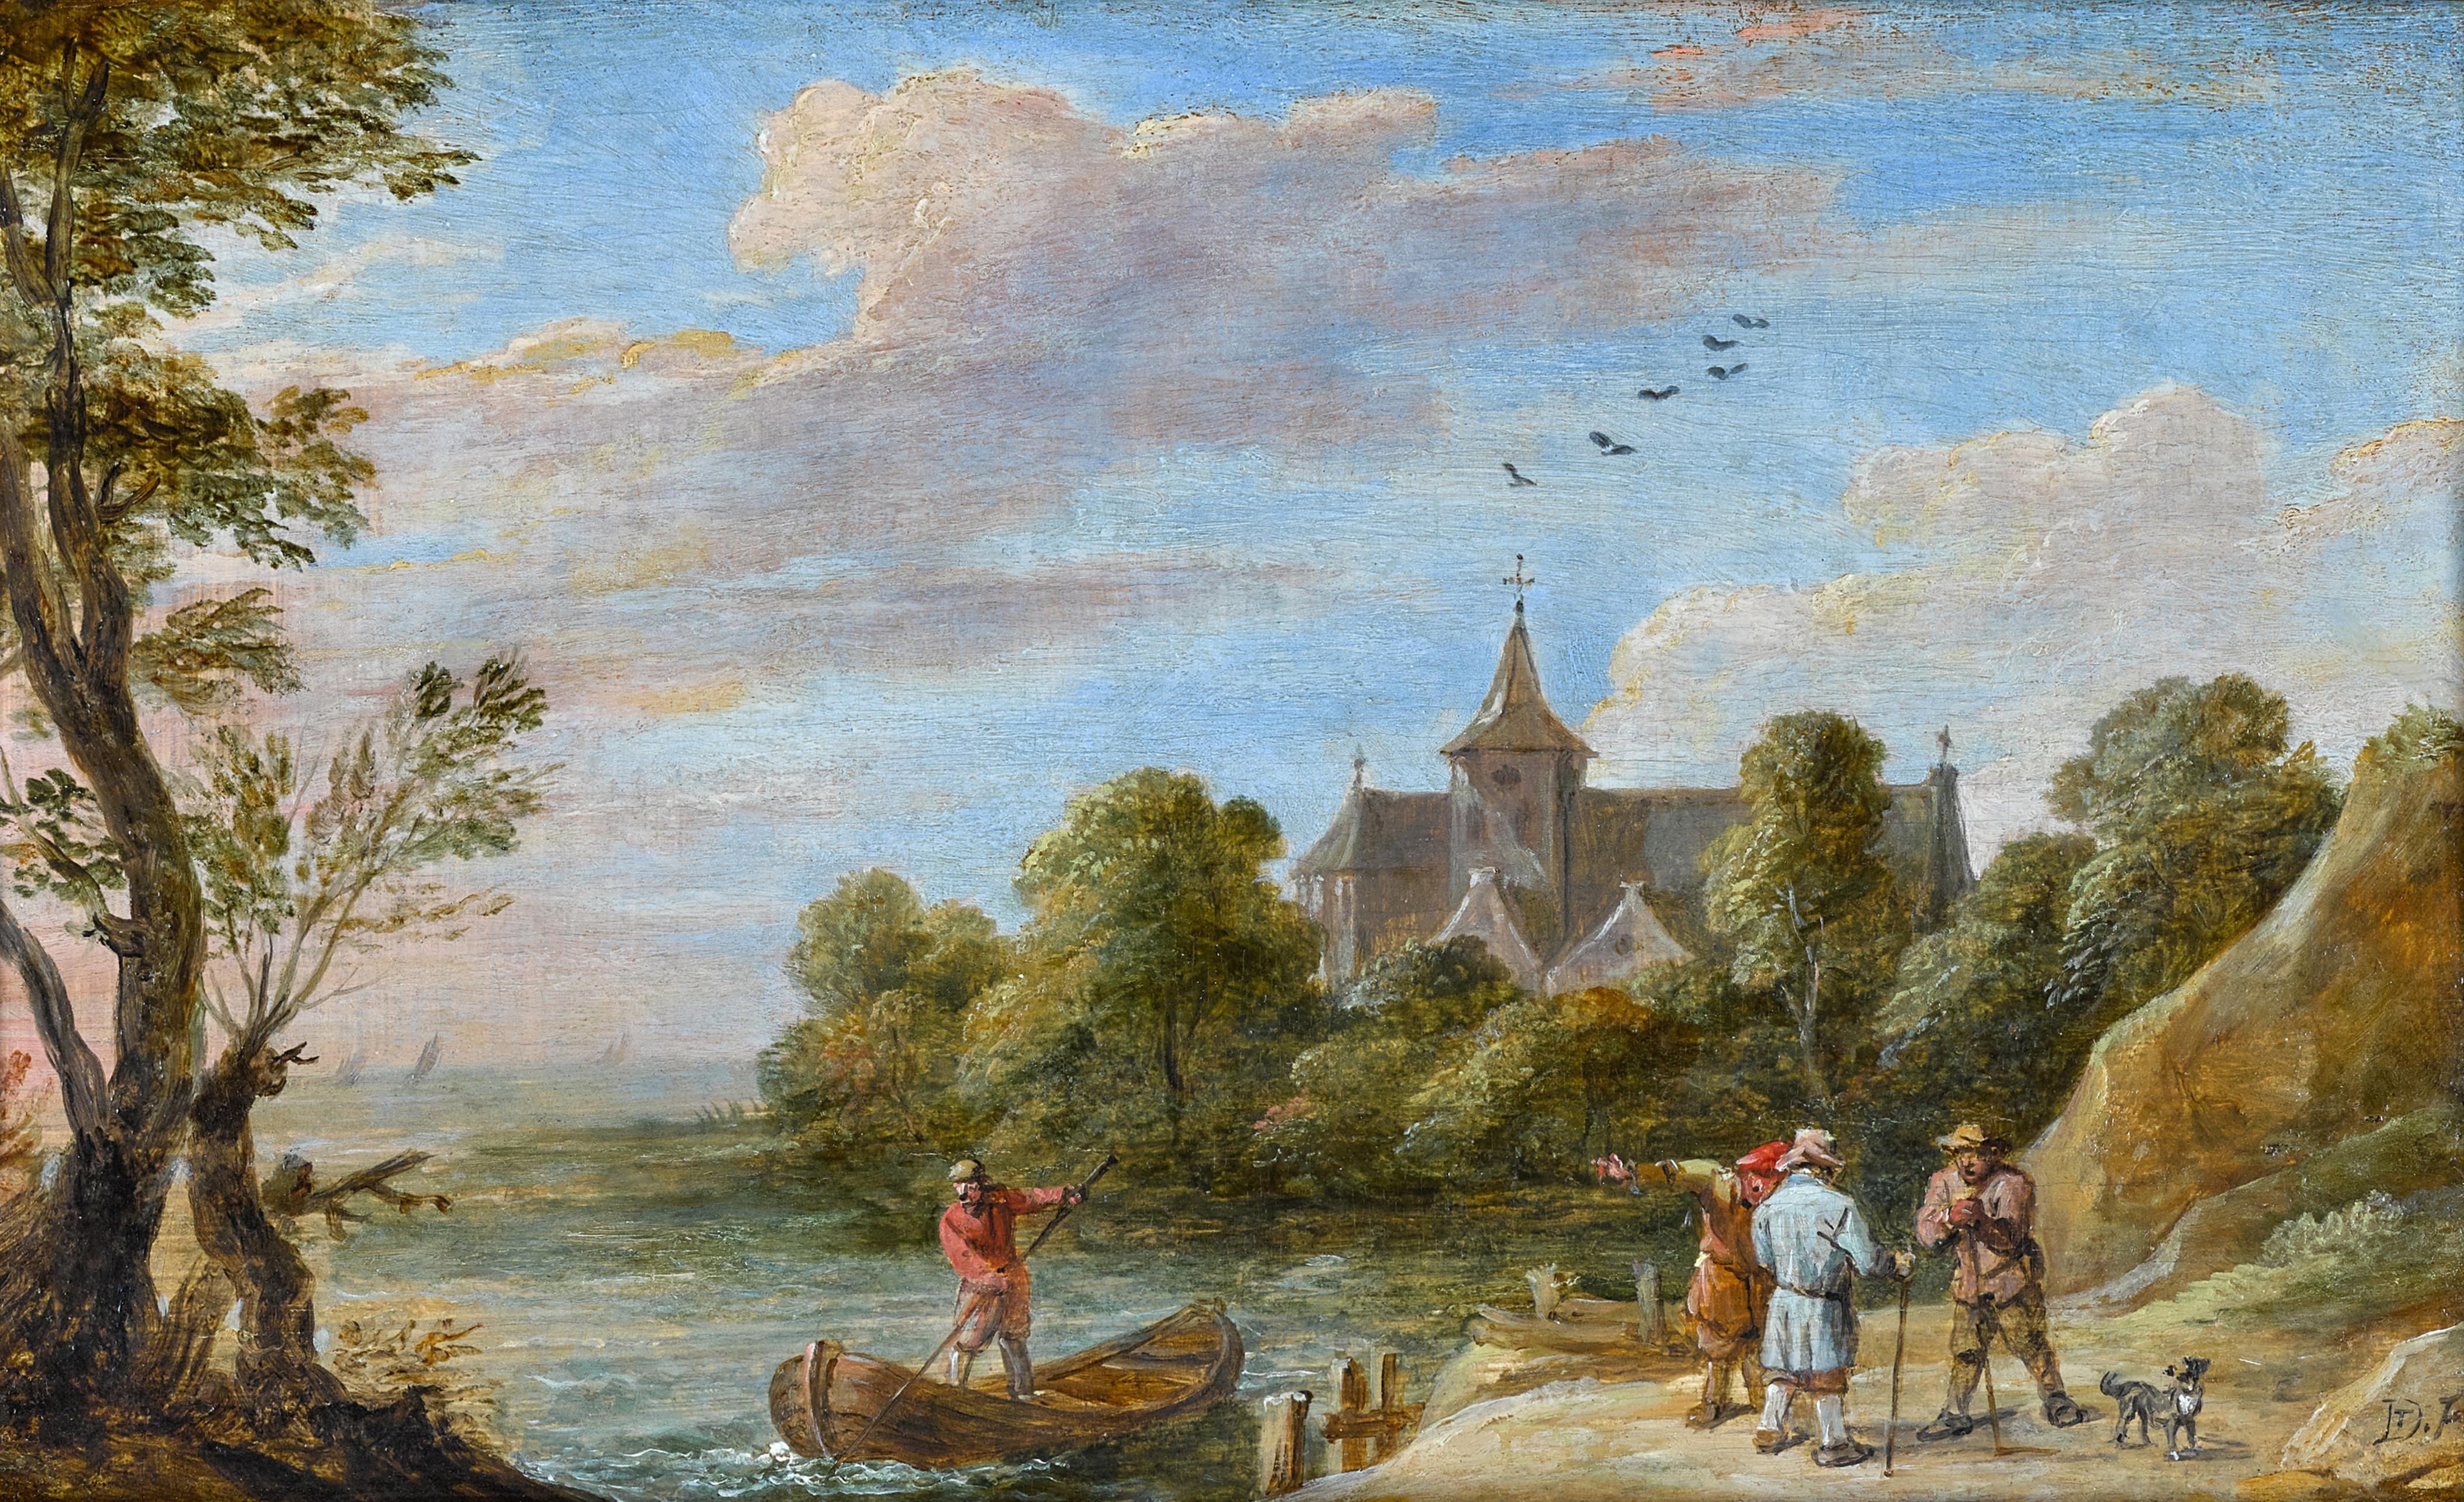 Paysage fluvial avec des voyageurs près d'une jetée et un homme dans un bateau à rames.